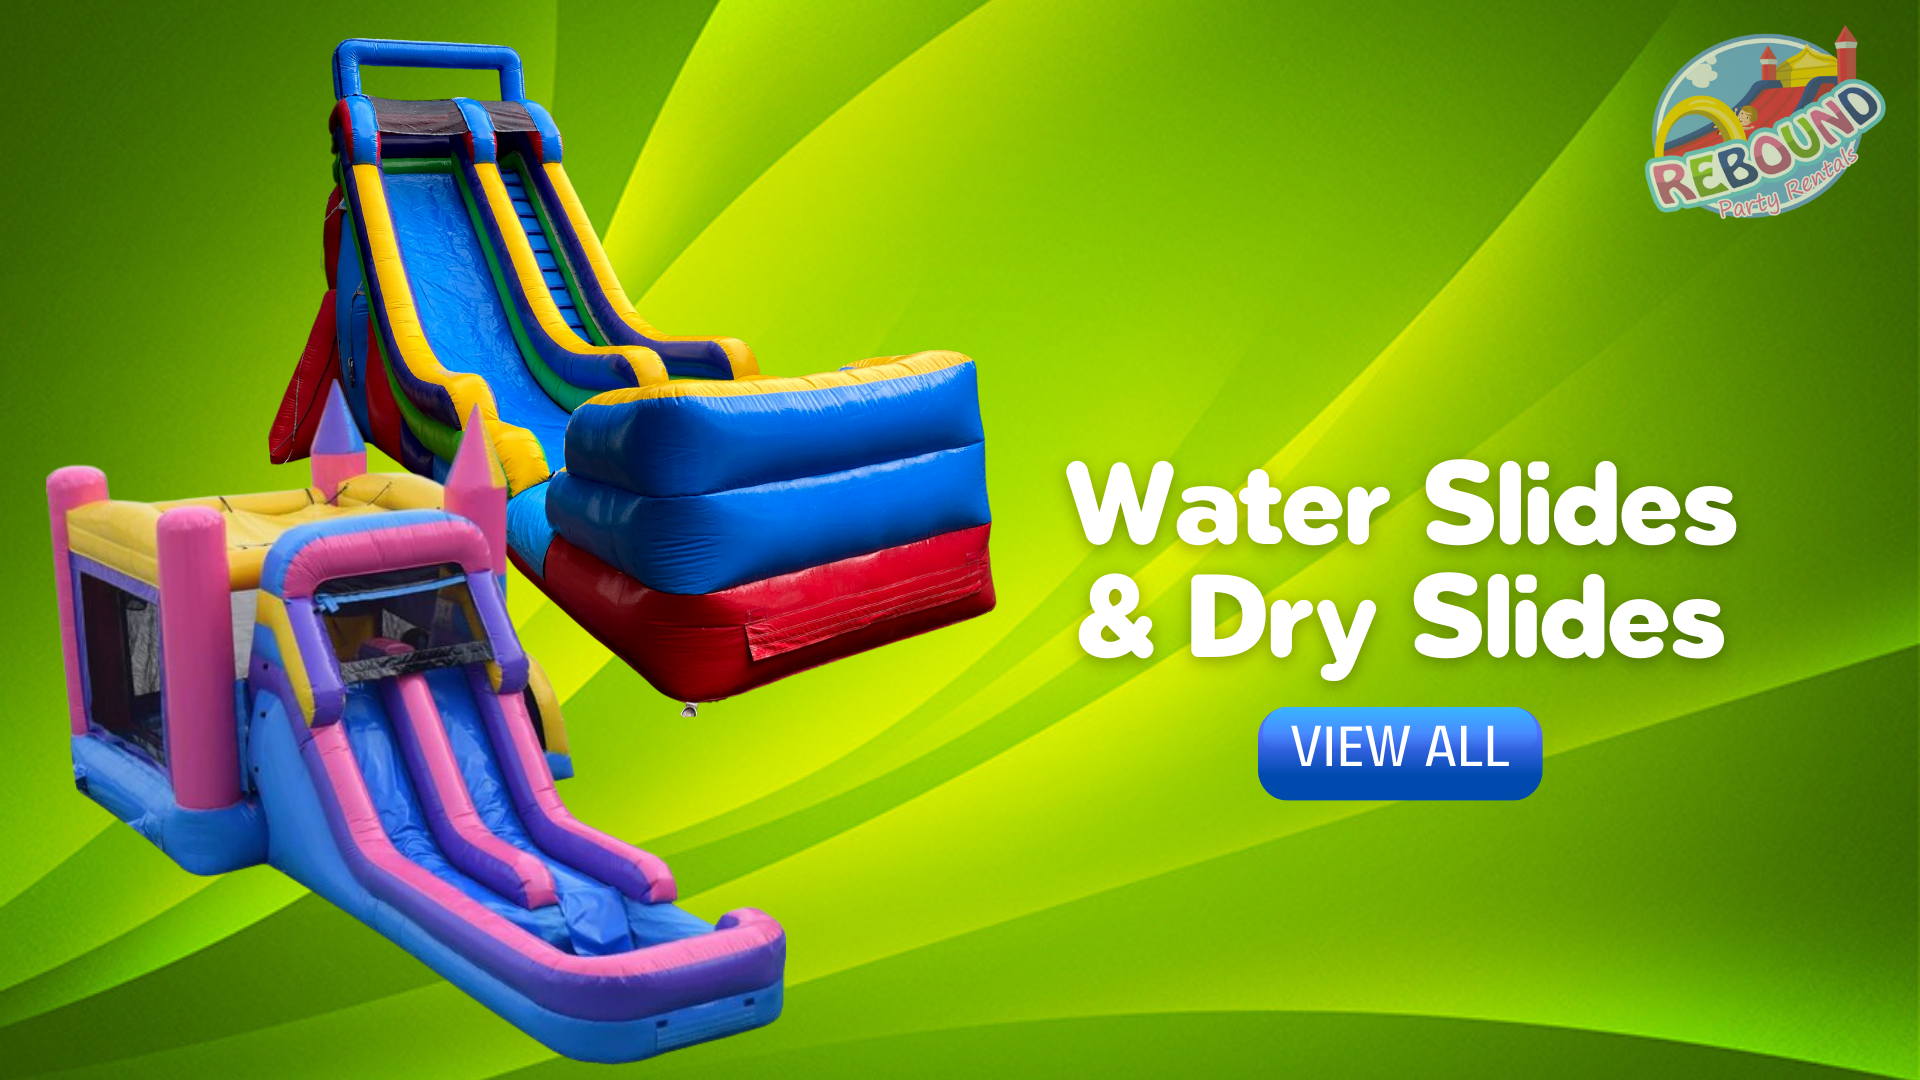 Belleview Inflatable Water Slide Rental